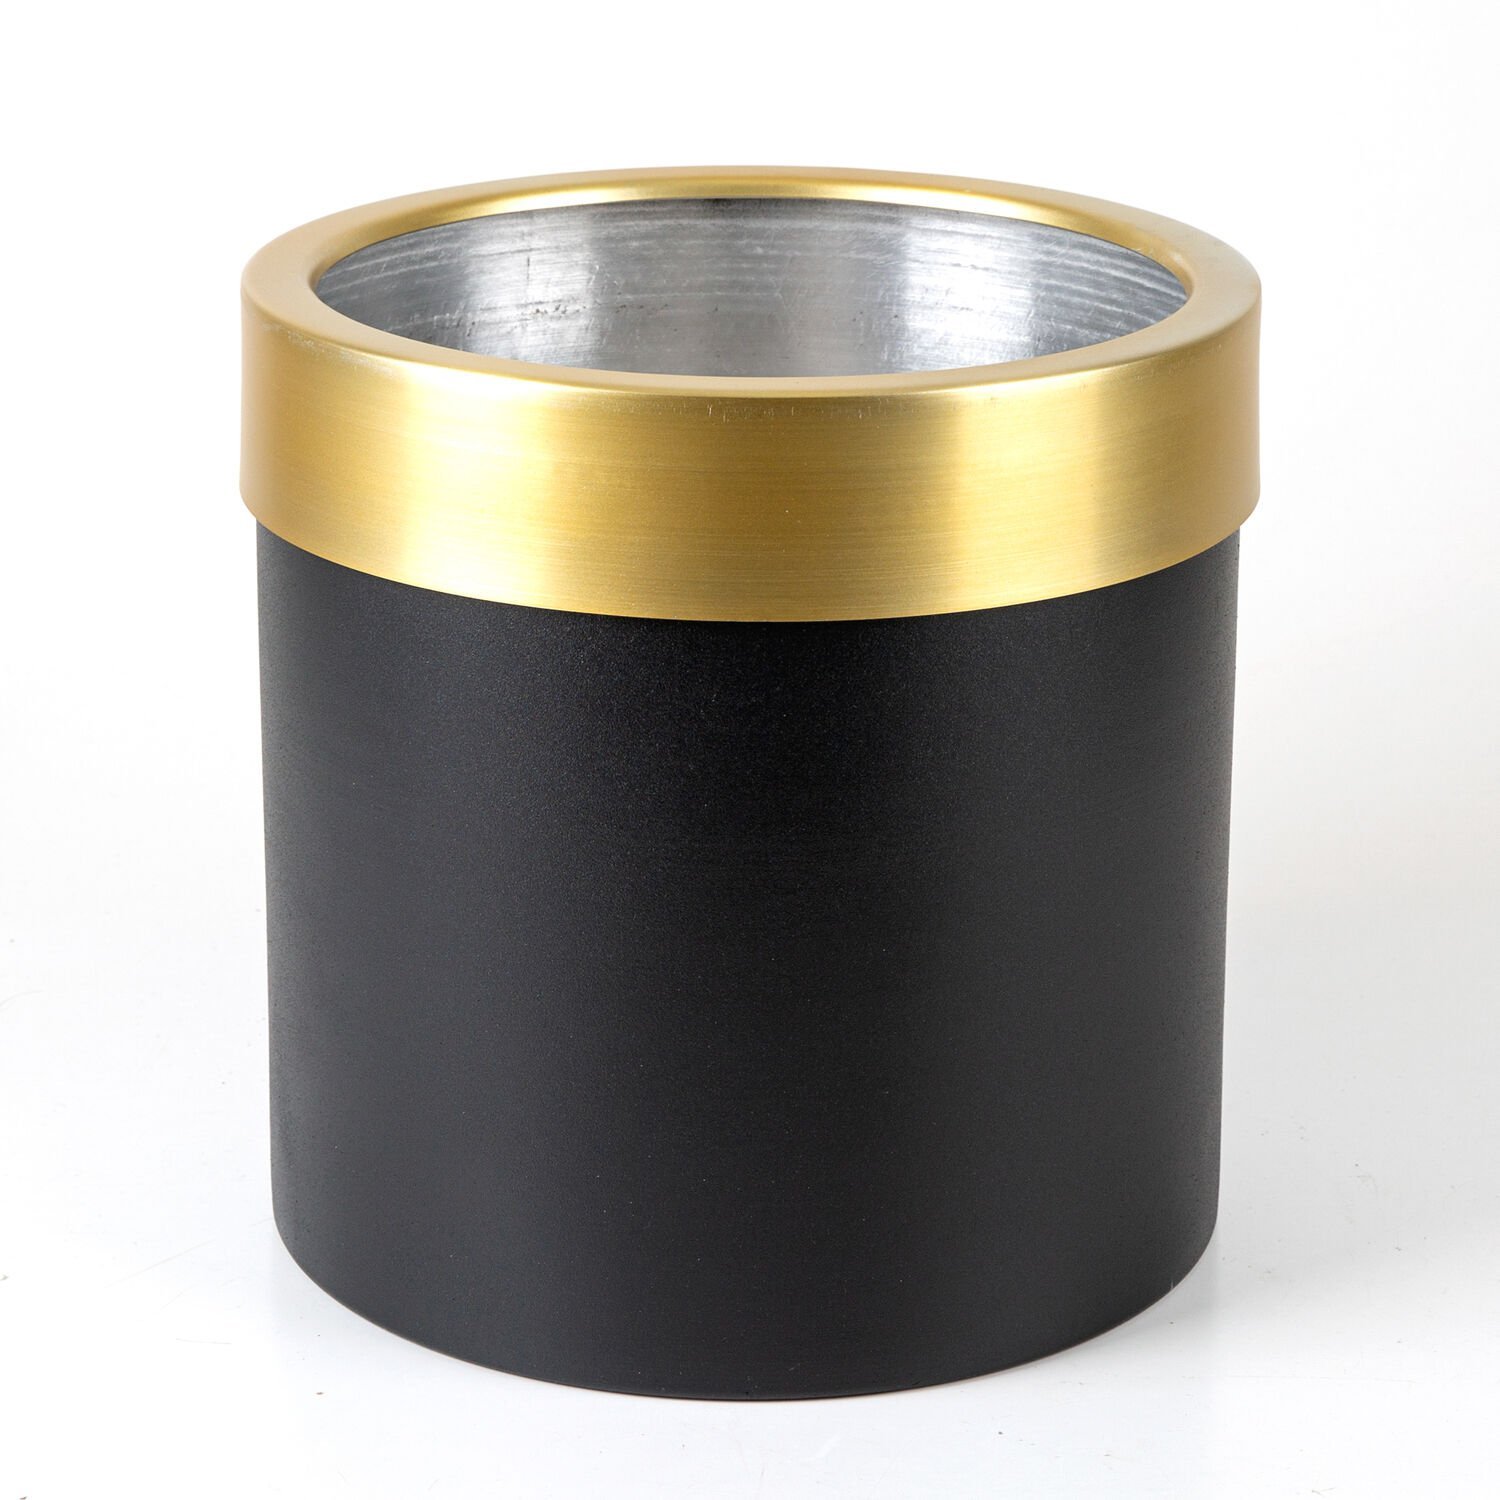 Silindir Alüminyum Saksı Çemberli Siyah-Gold ( Ebat 35X35 Cm.)